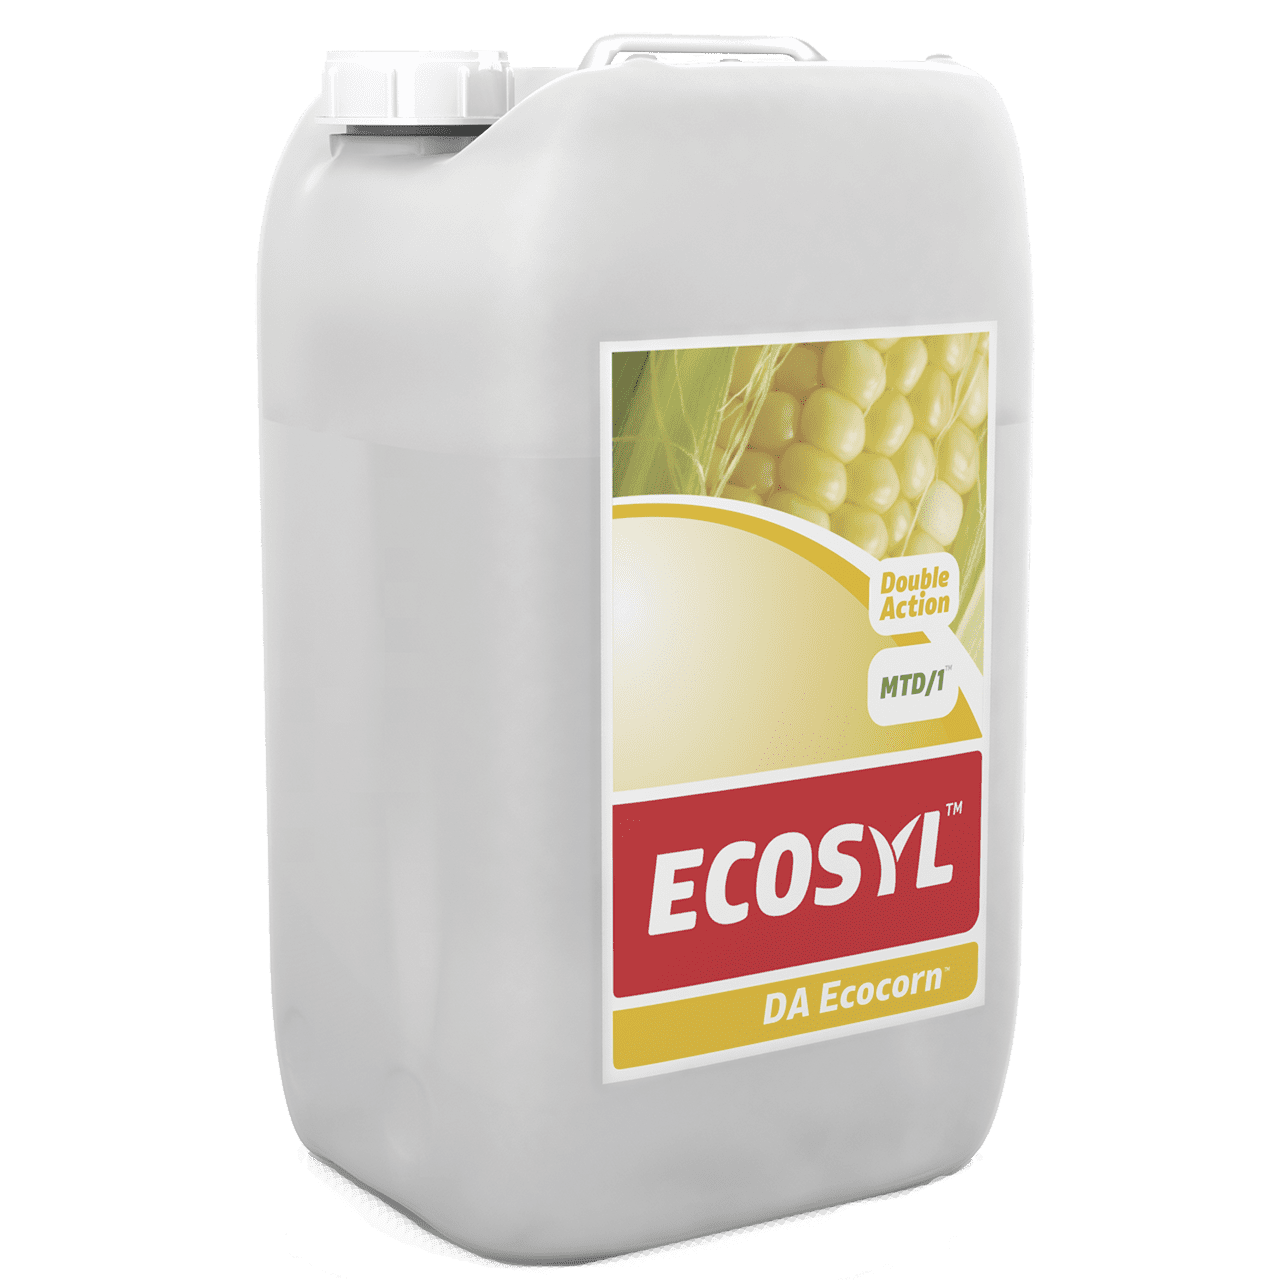 ECOSYL DA Ecocorn